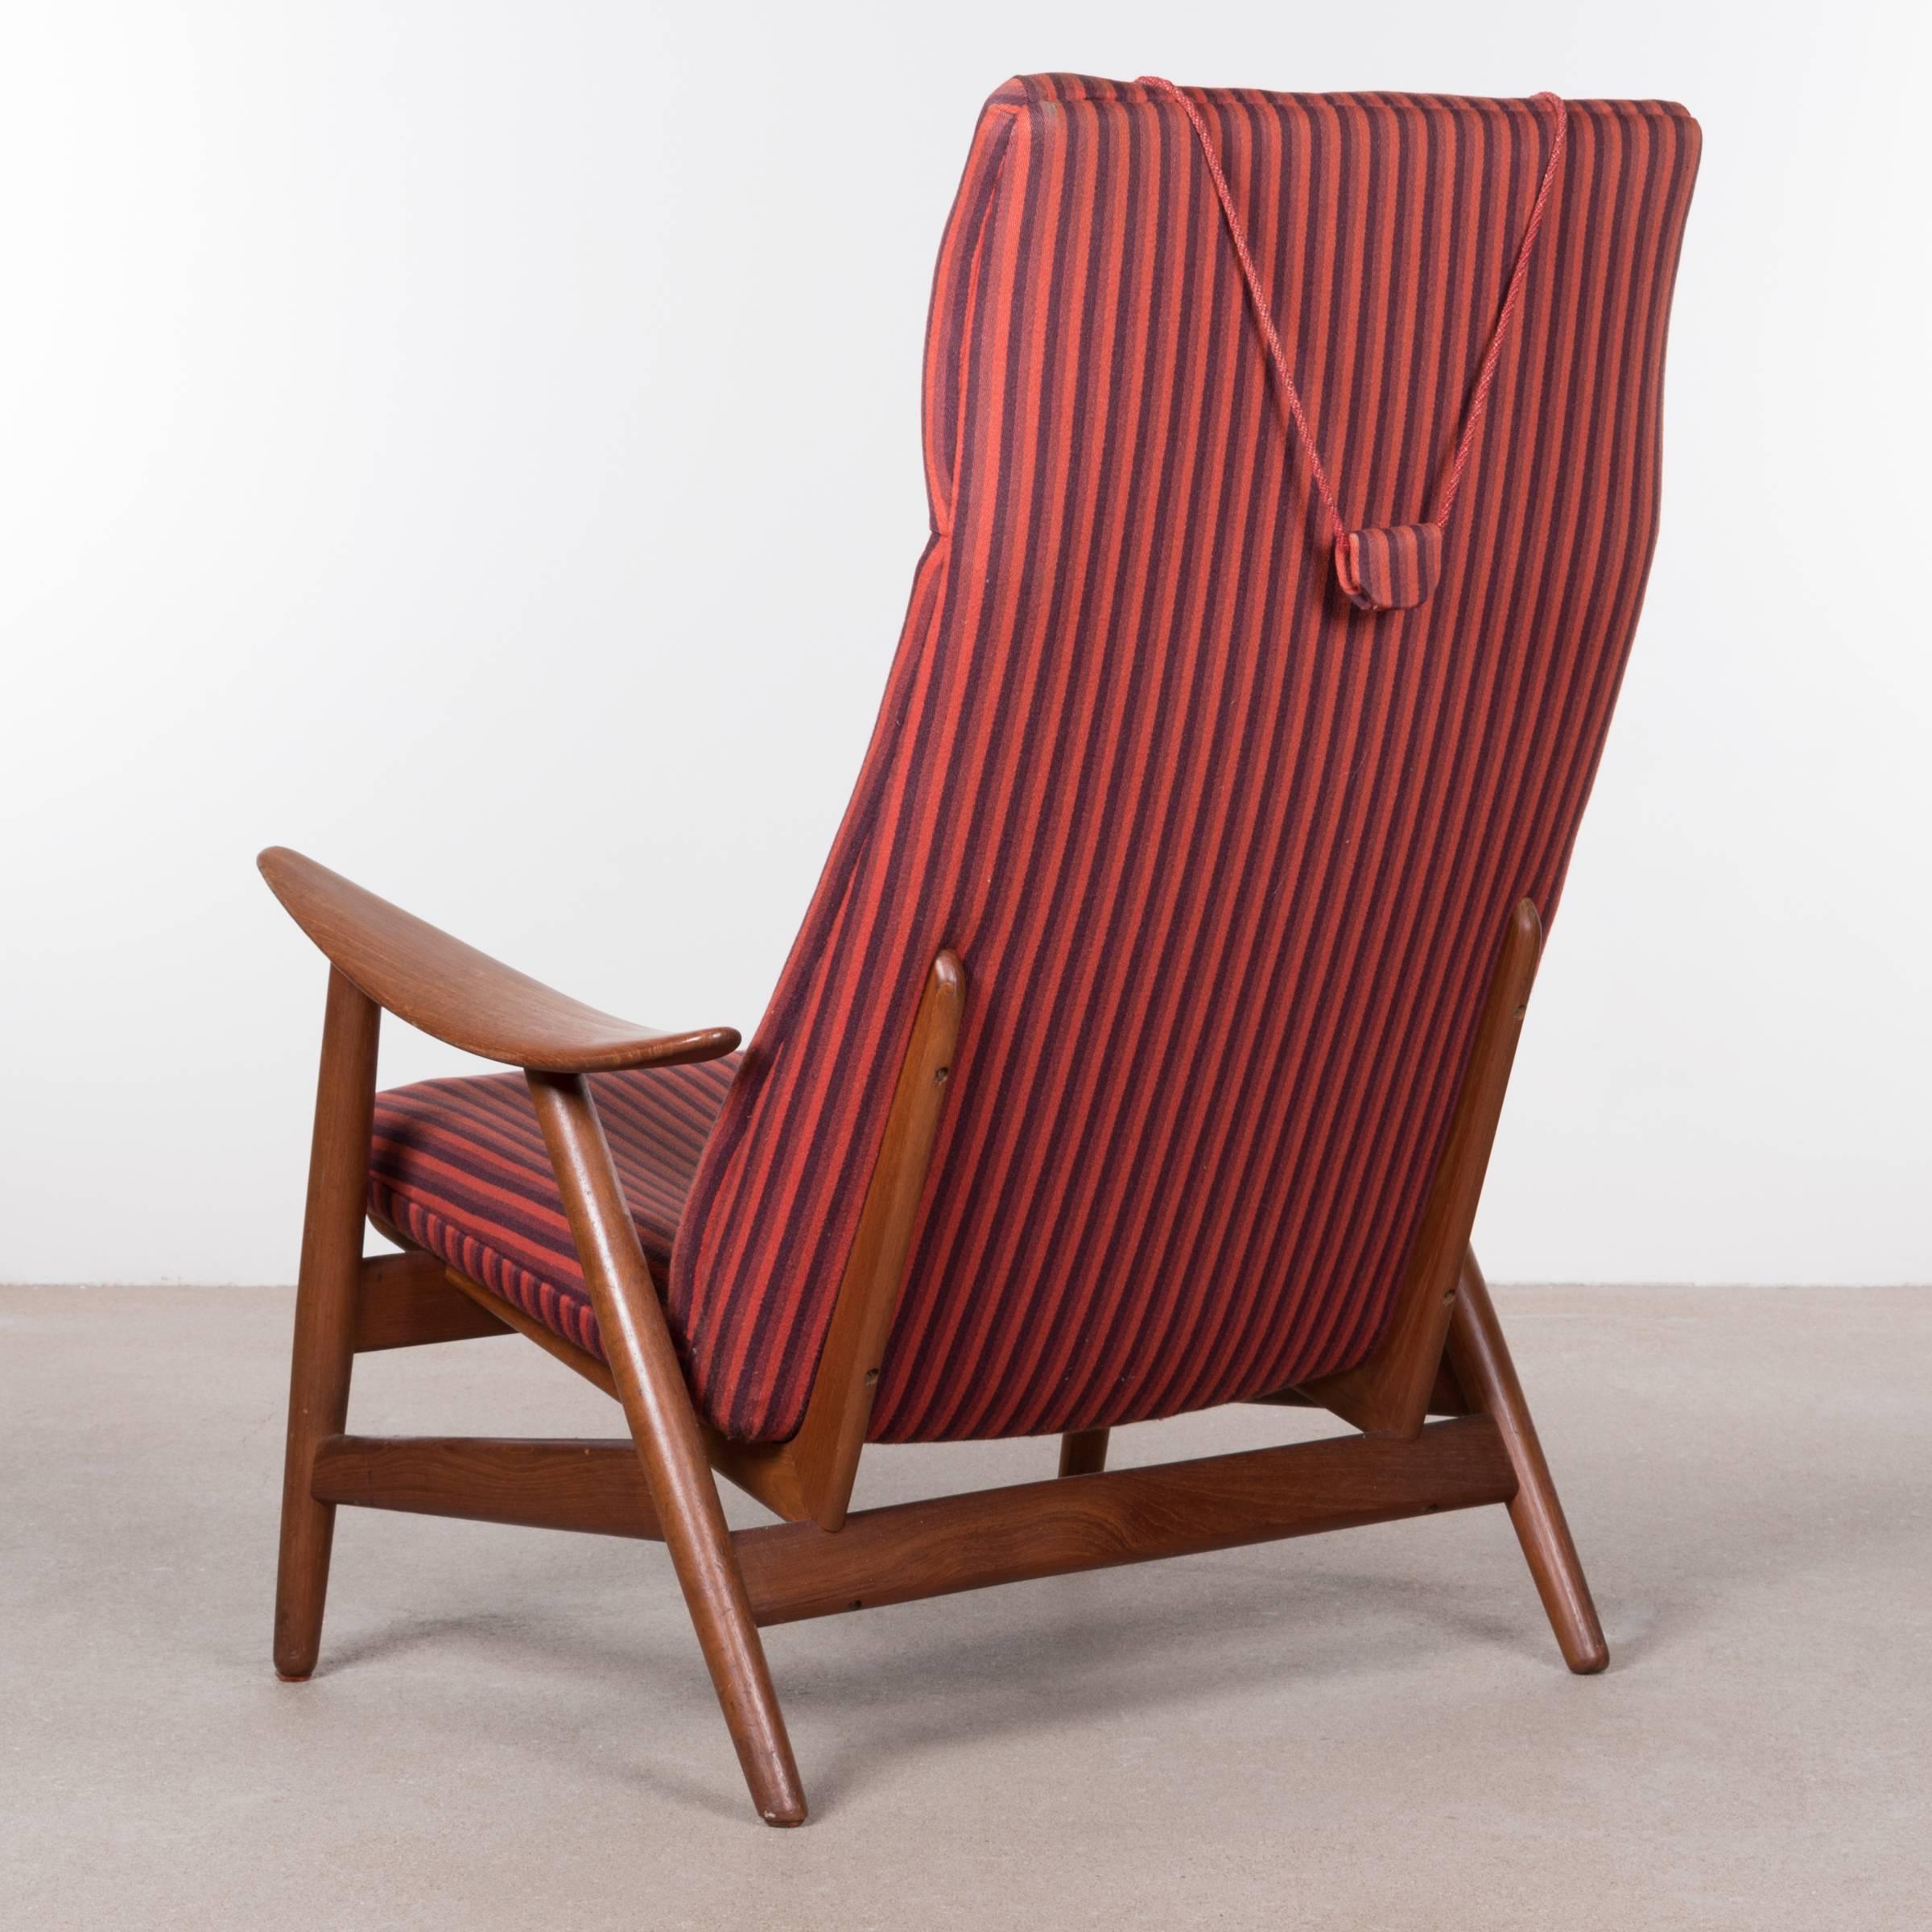 Illum Wikkelso Teak Lounge Chair Model 10H for Soren Willadsen, Denmark (Skandinavische Moderne)